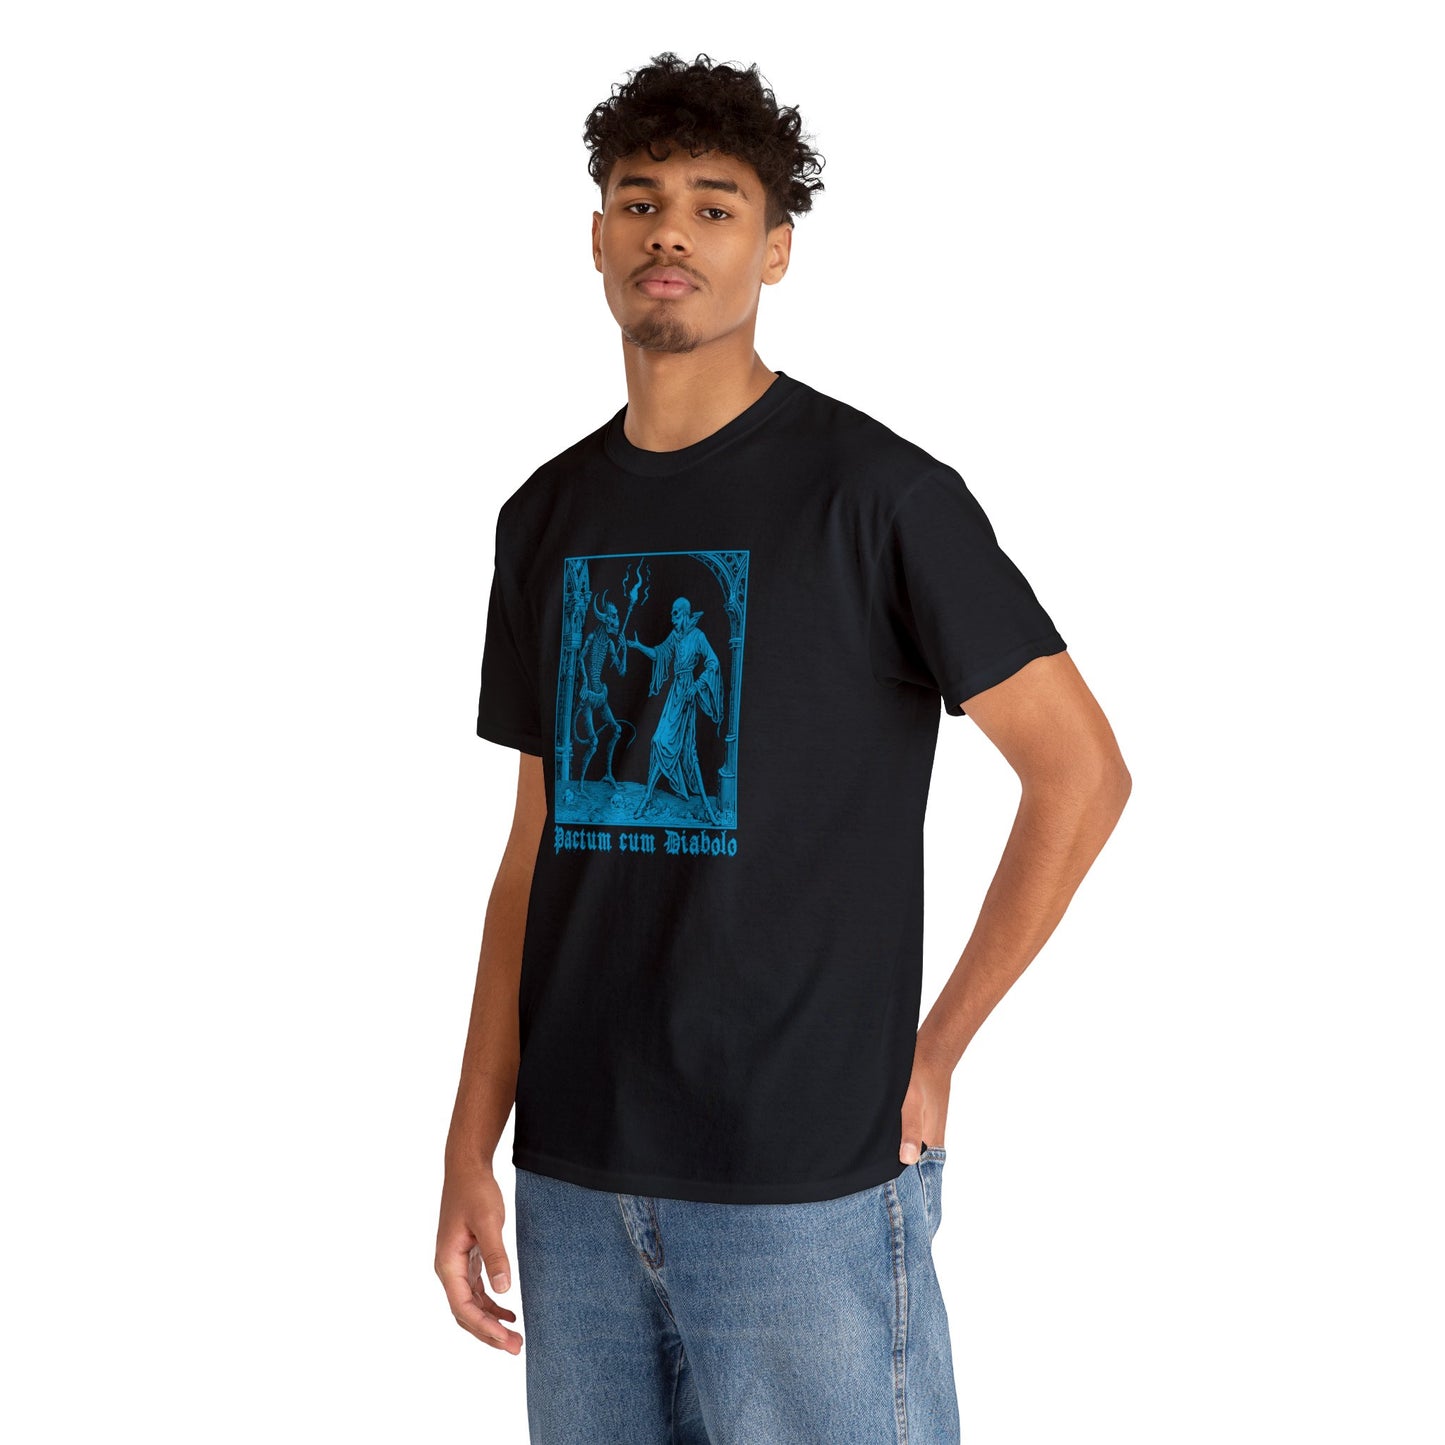 Unisex T-shirt Pactum cum Diabolo in Blue - Frogos Design